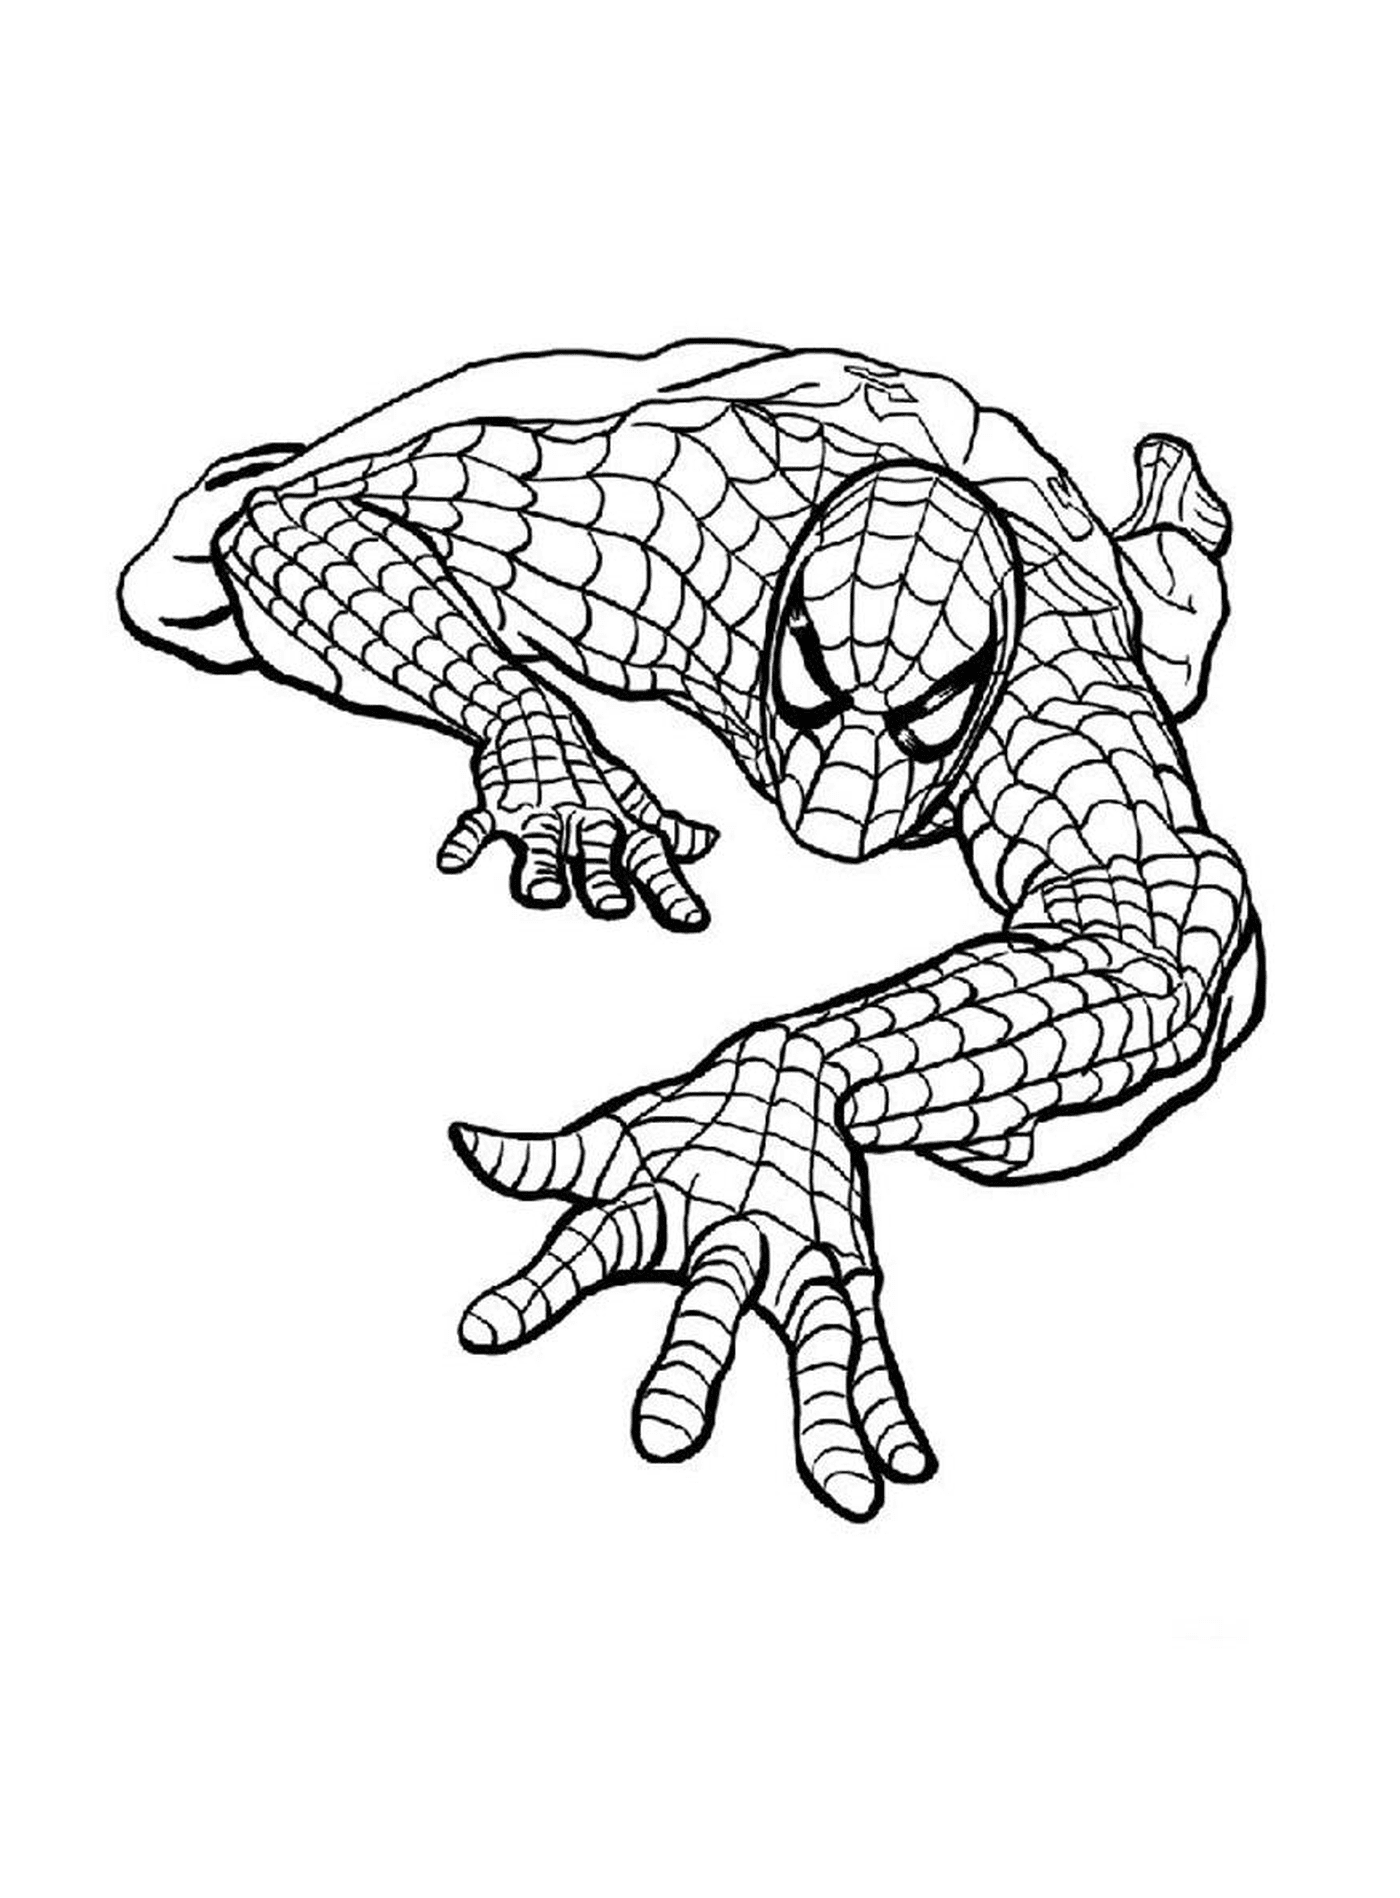  Spiderman representado en el dibujo 